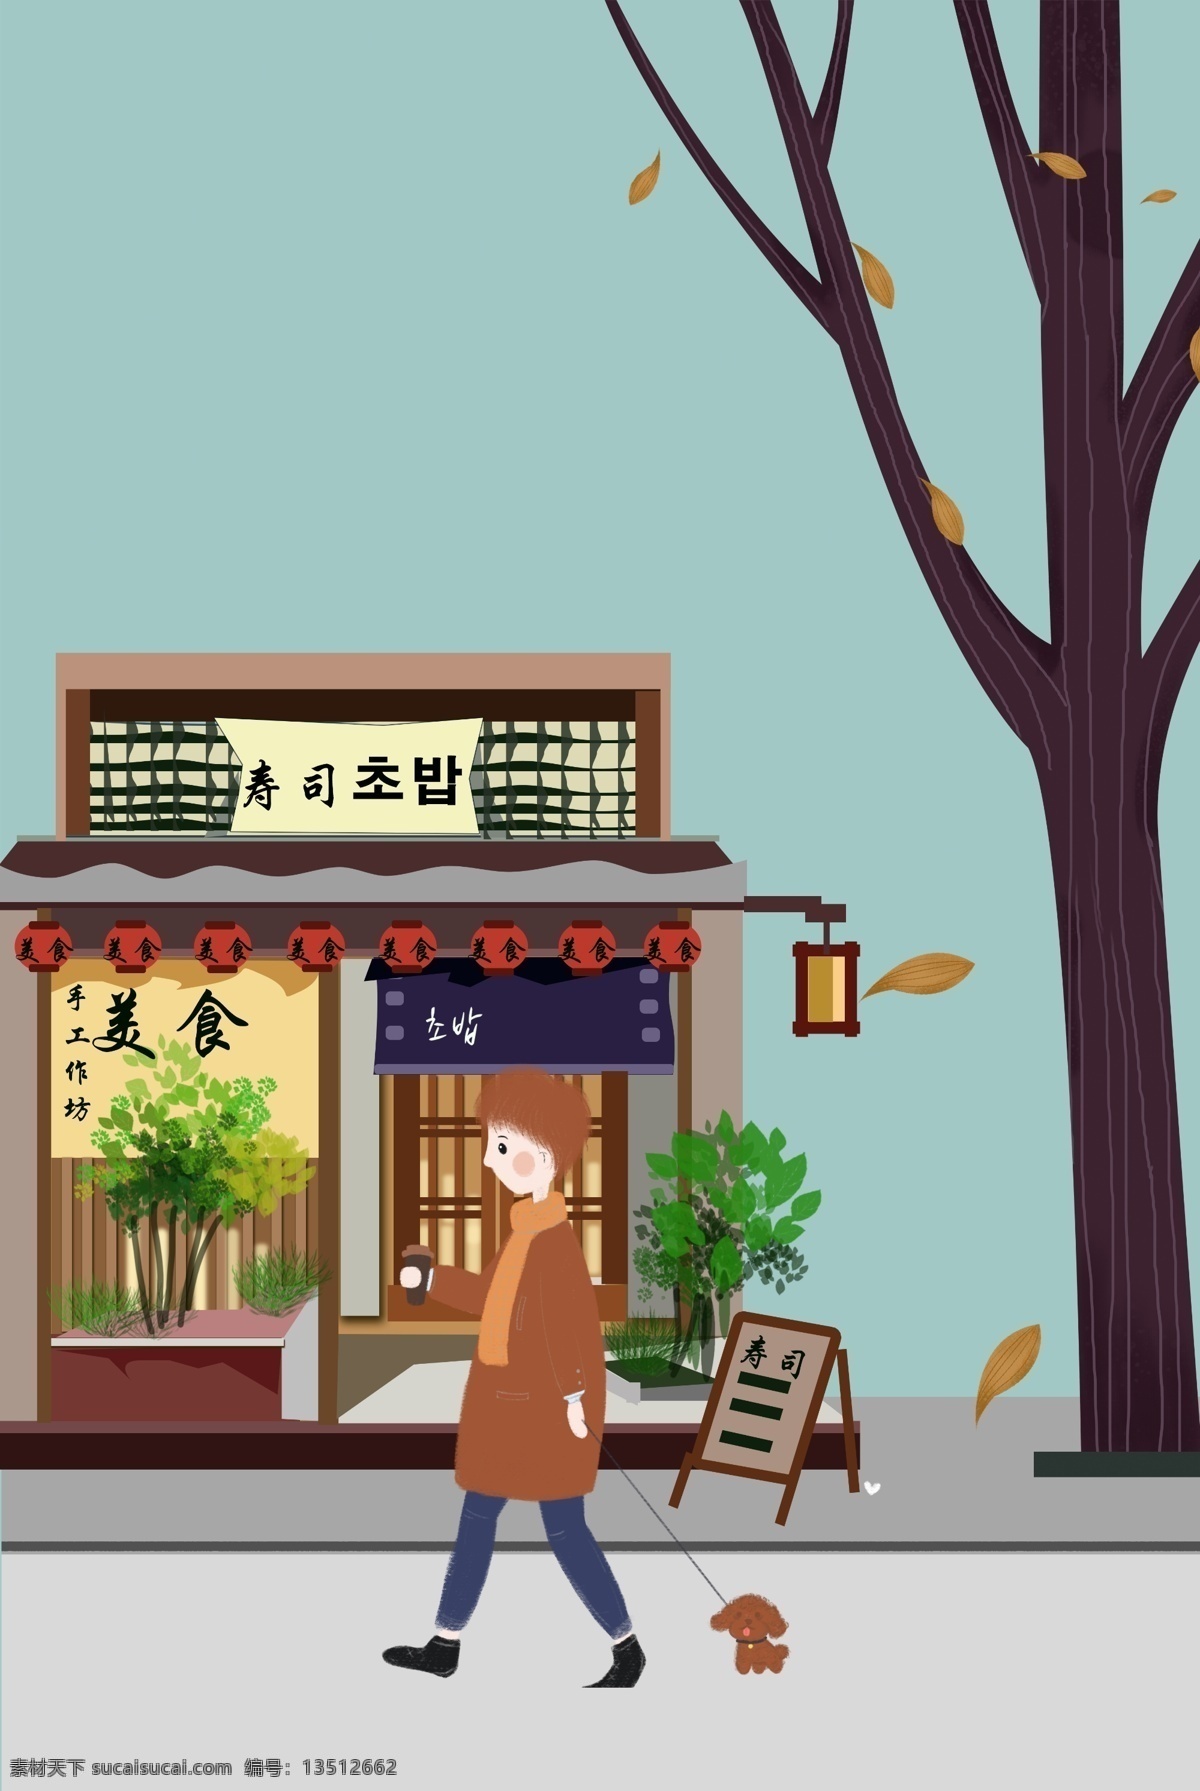 寿司店 馋嘴 男孩 美食 寿司 日本美食 街道 树木 动物 出行 插画风 促销海报